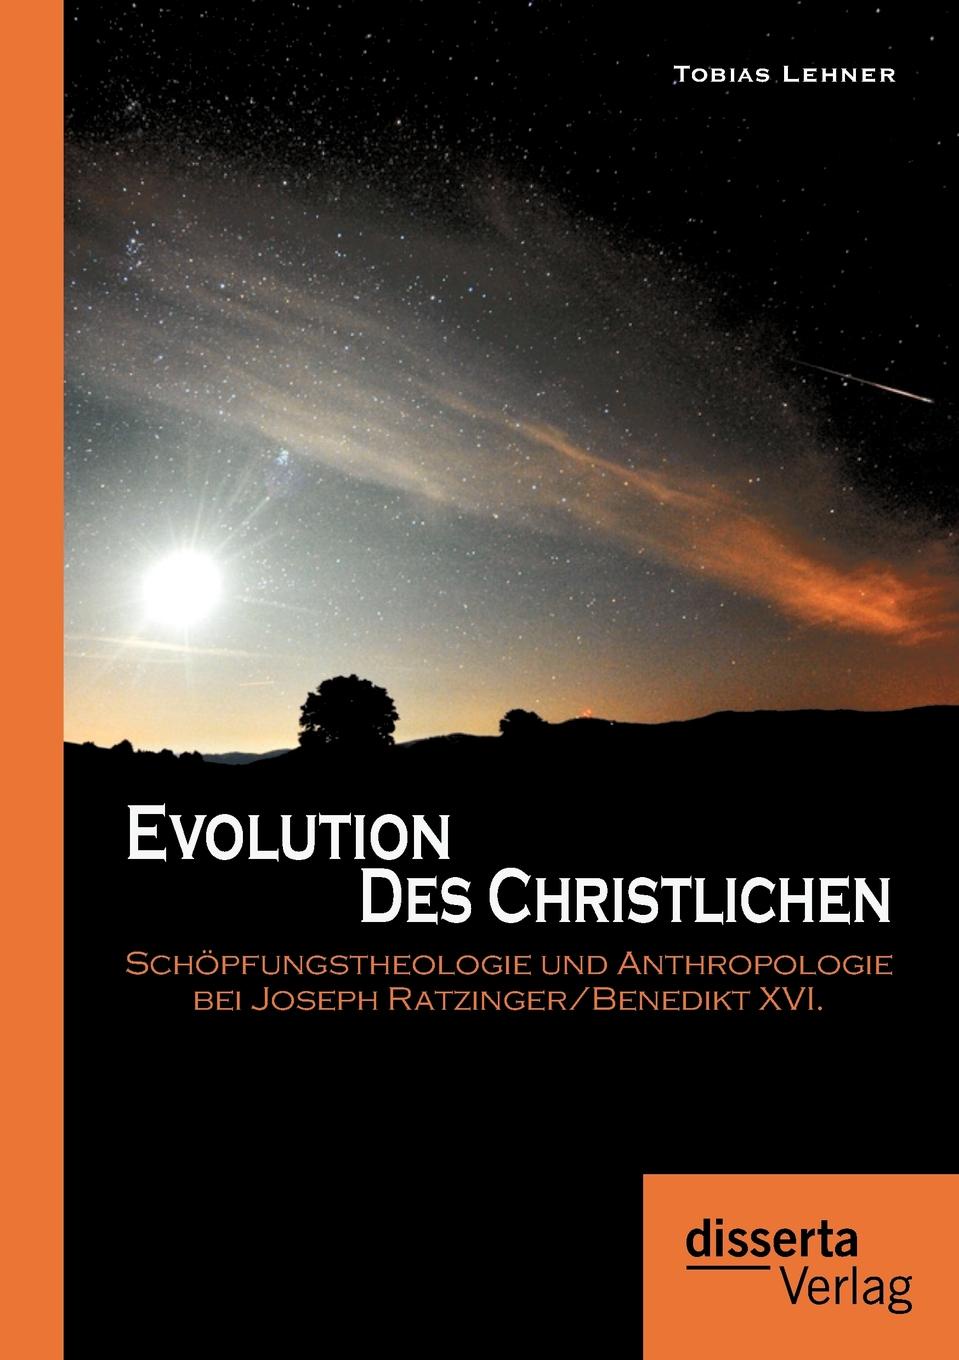 Evolution des Christlichen. Schopfungstheologie und Anthropologie bei Joseph Ratzinger/Benedikt XVI.